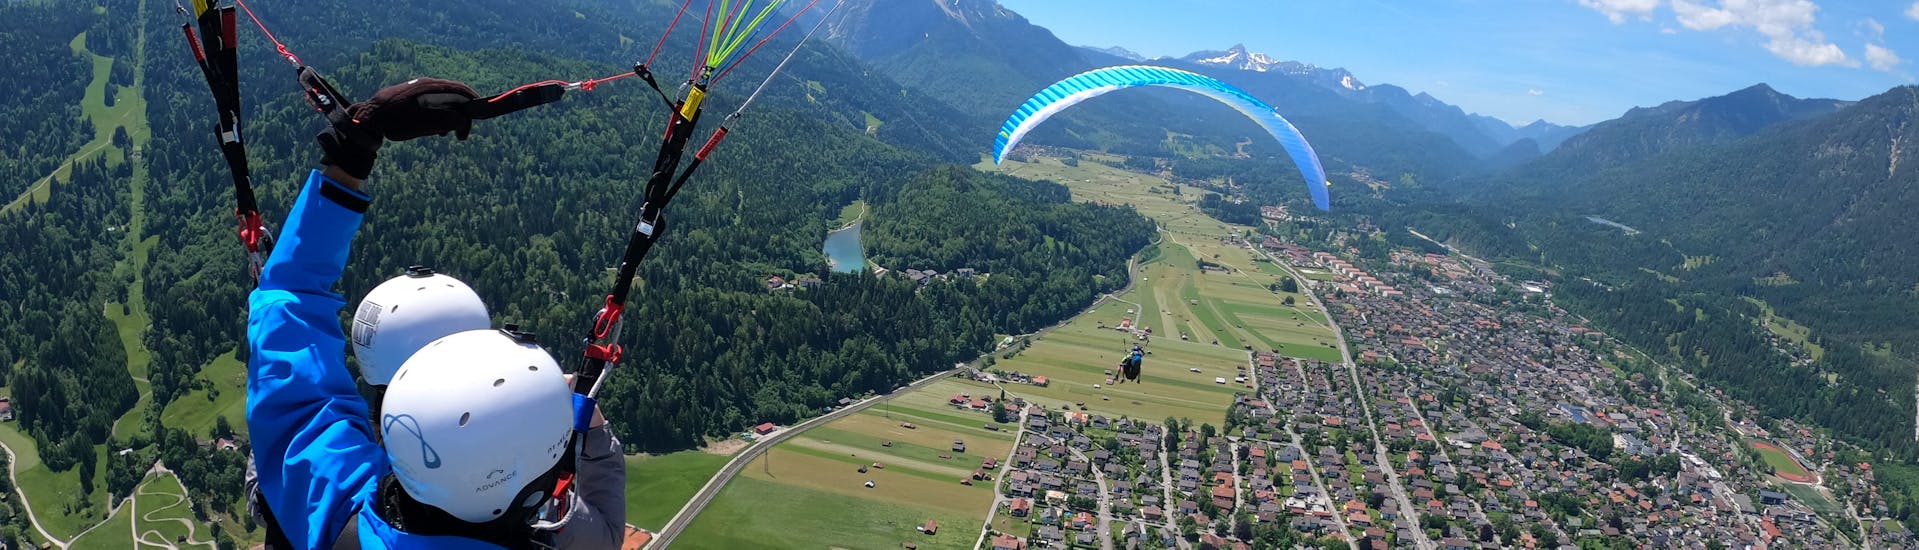 Vol en parapente panoramique à Garmisch-Partenkirchen.